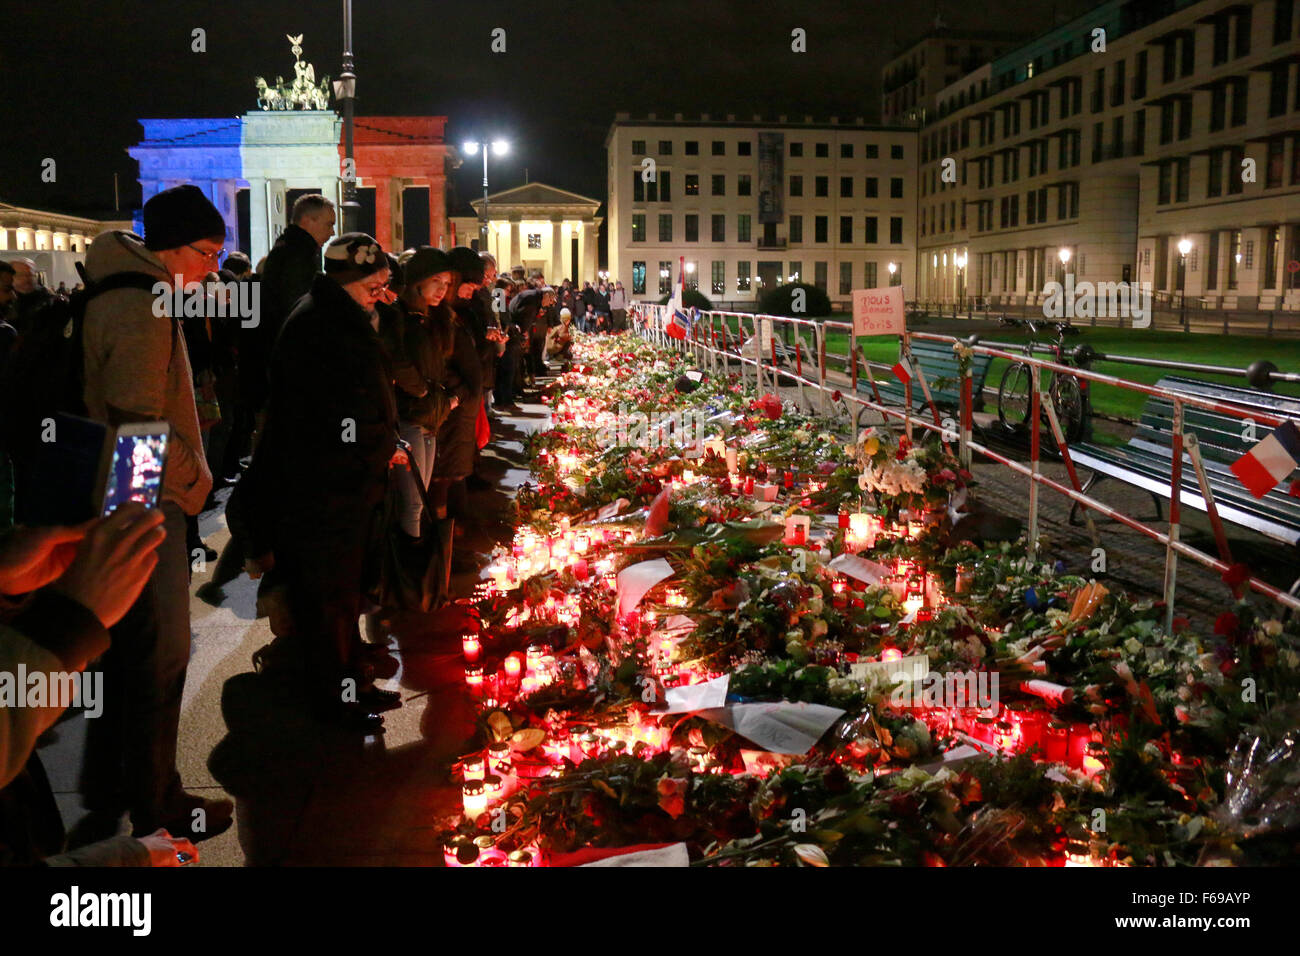 14. November 2015 - BERLIN: das Brandenburger Tor in den Farben der Frankreich - Trauer in der französischen Botschaft in Berlin für das vic Stockfoto